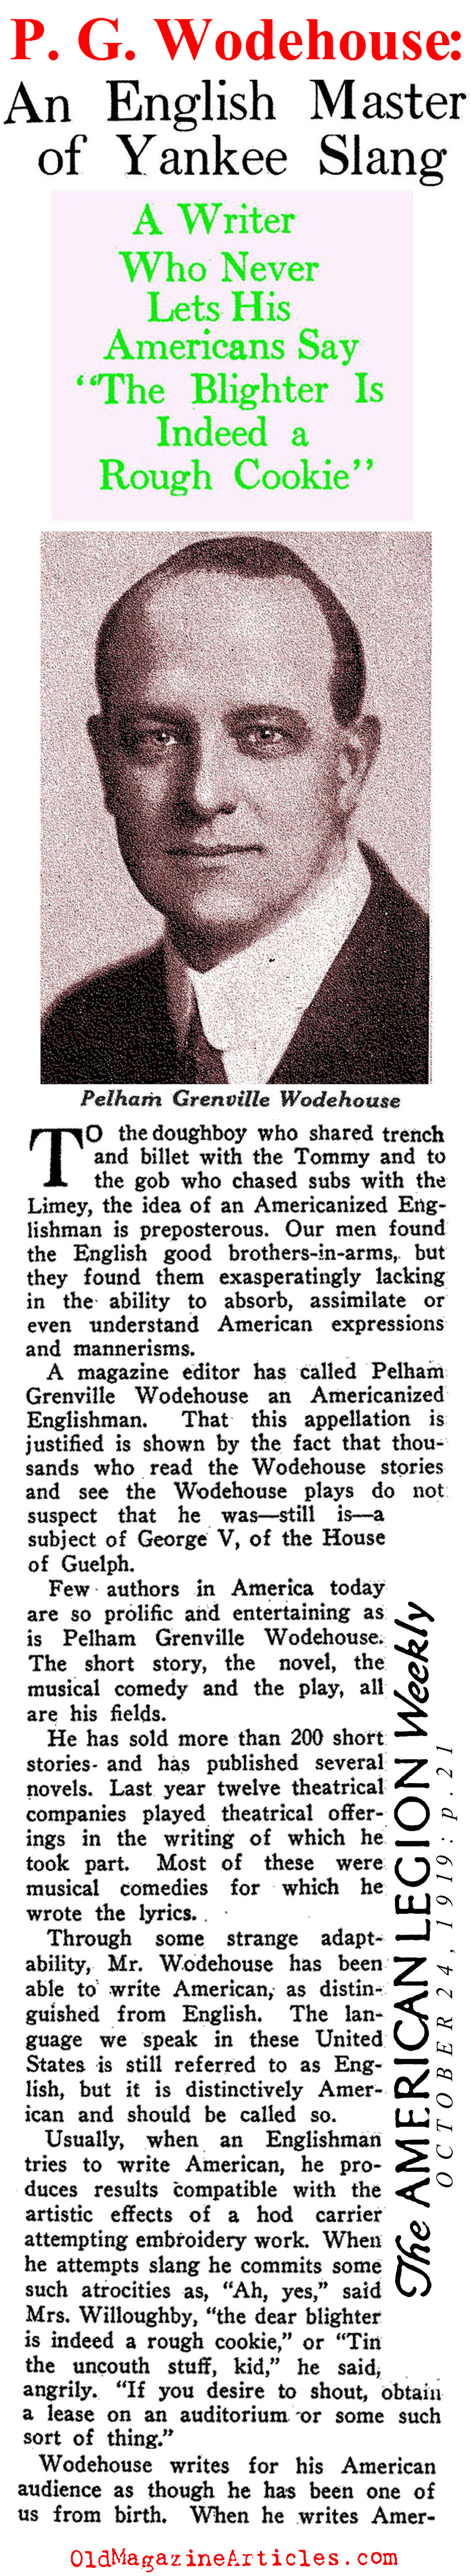 P.G. Wodehouse: Master of American Slang (American Legion Weekly, 1919)